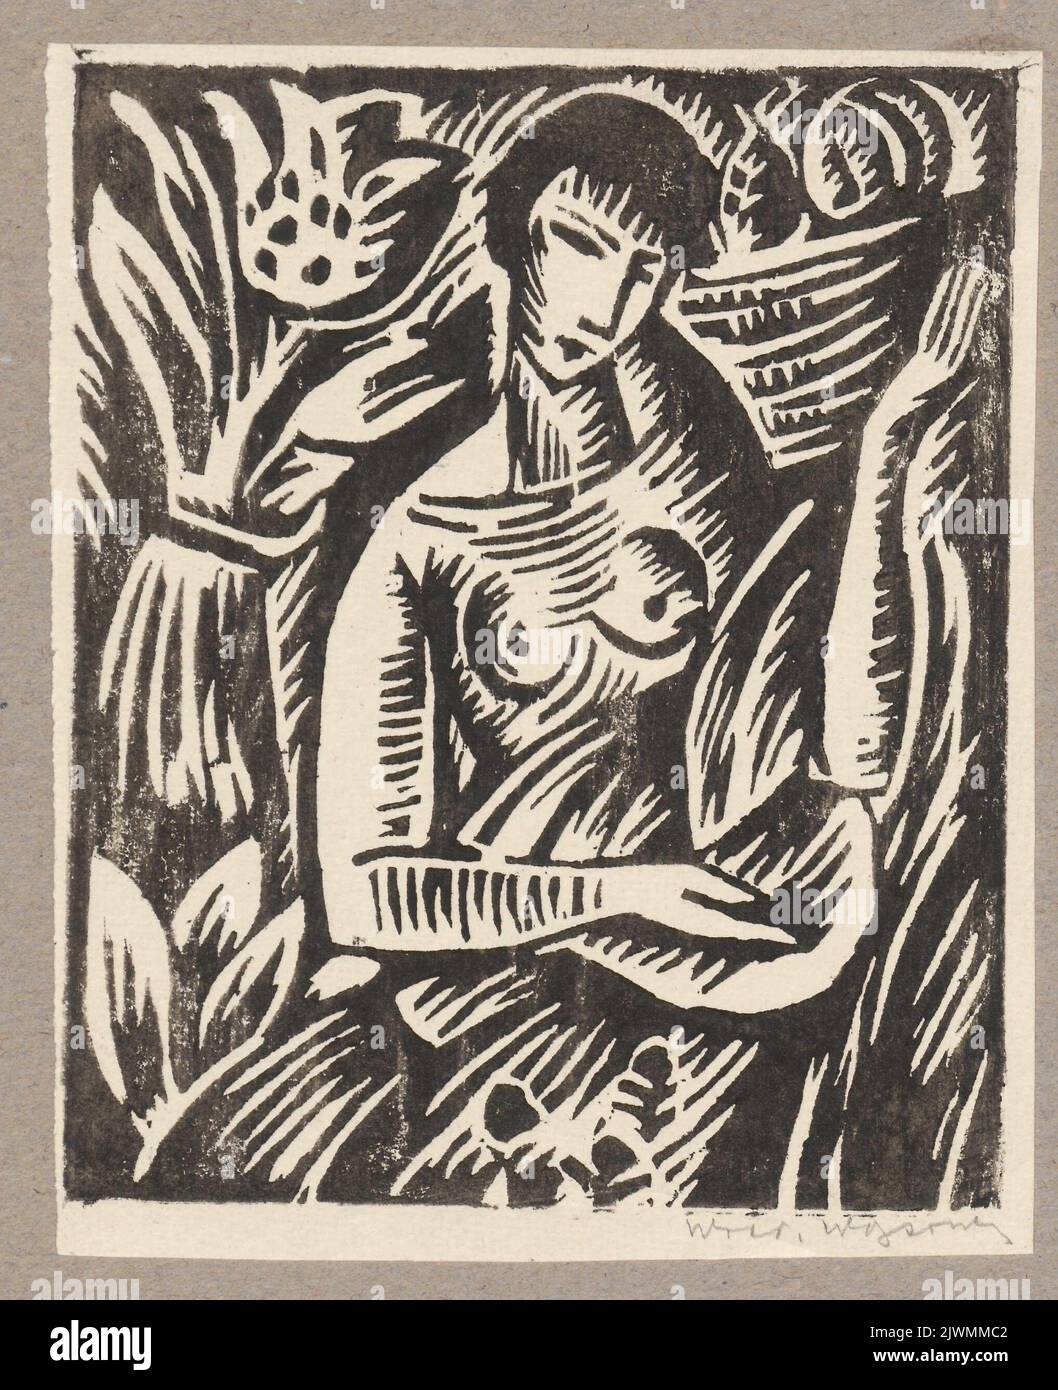 Dziewczyna z owocami. Wąsowicz, Wacław (1891-1942), graphic artist Stock Photo